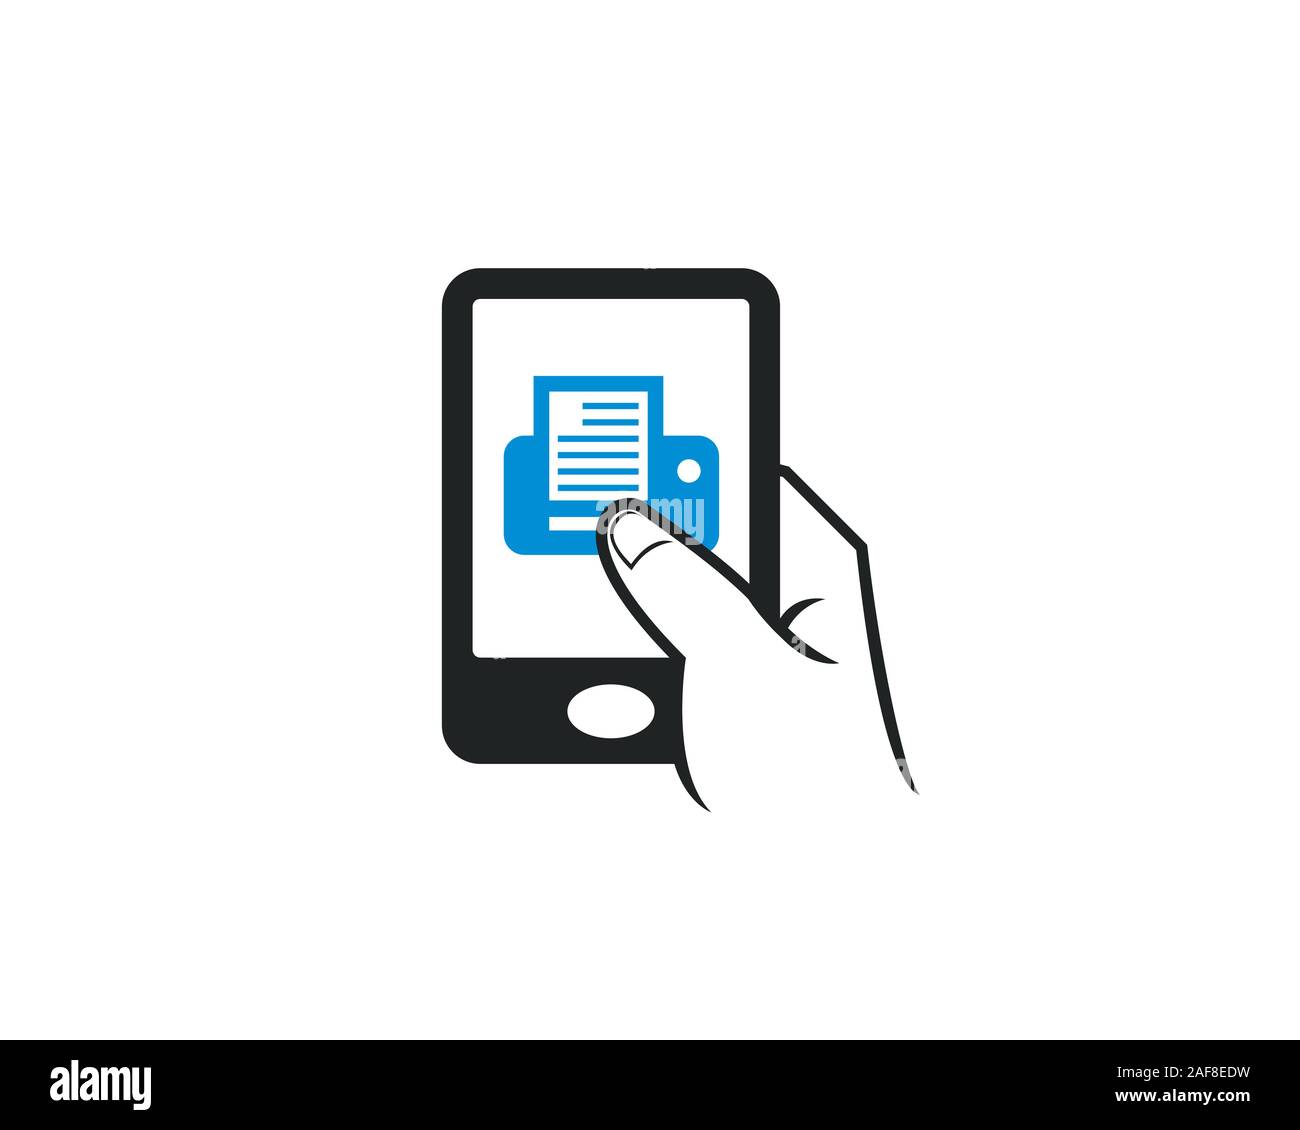 Handy touch Apps Symbol für Drucker drucken Drucken Vertriebsgesellschaft  Stock-Vektorgrafik - Alamy